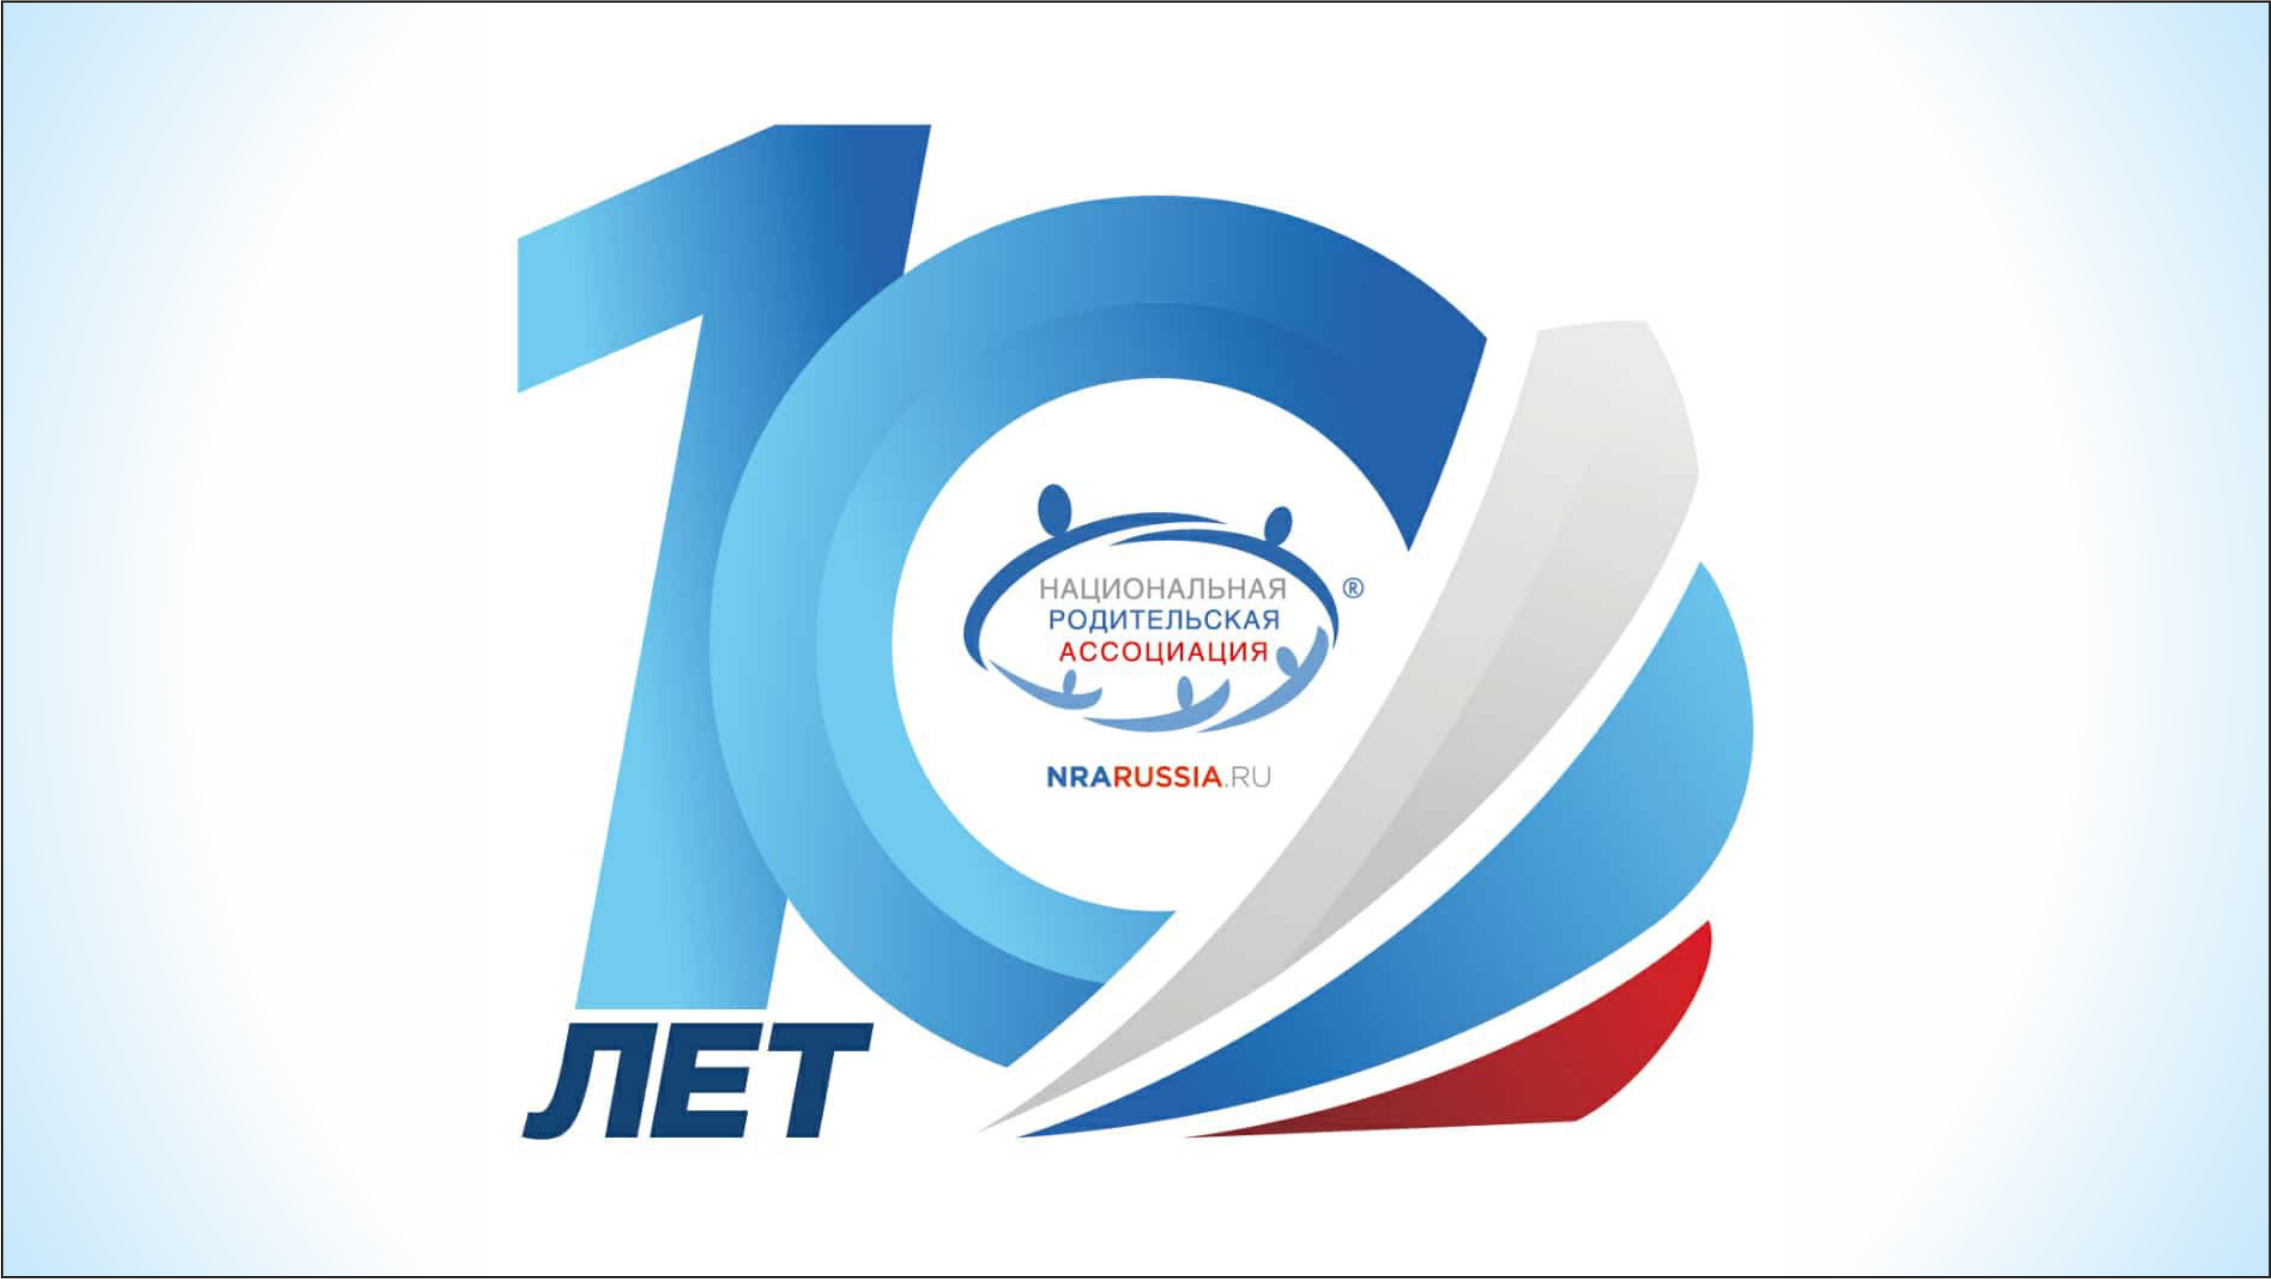 Кузбасские делегаты приняли участие в VI съезде Национальной родительской ассоциации